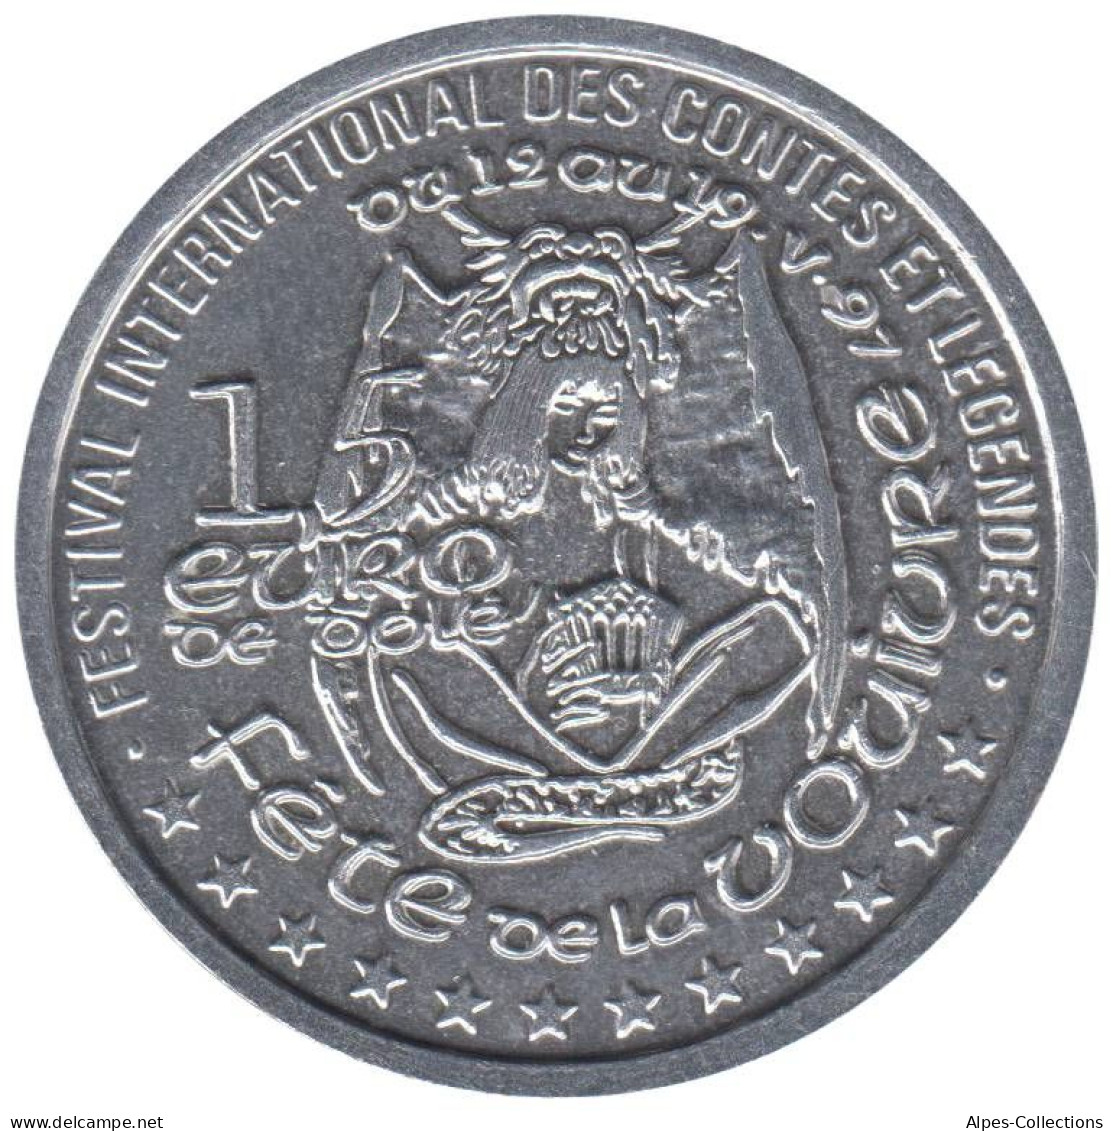 DOLE - EU0015.3 - 1,5 EURO DES VILLES - Réf: NR - 1997 - Euros Des Villes